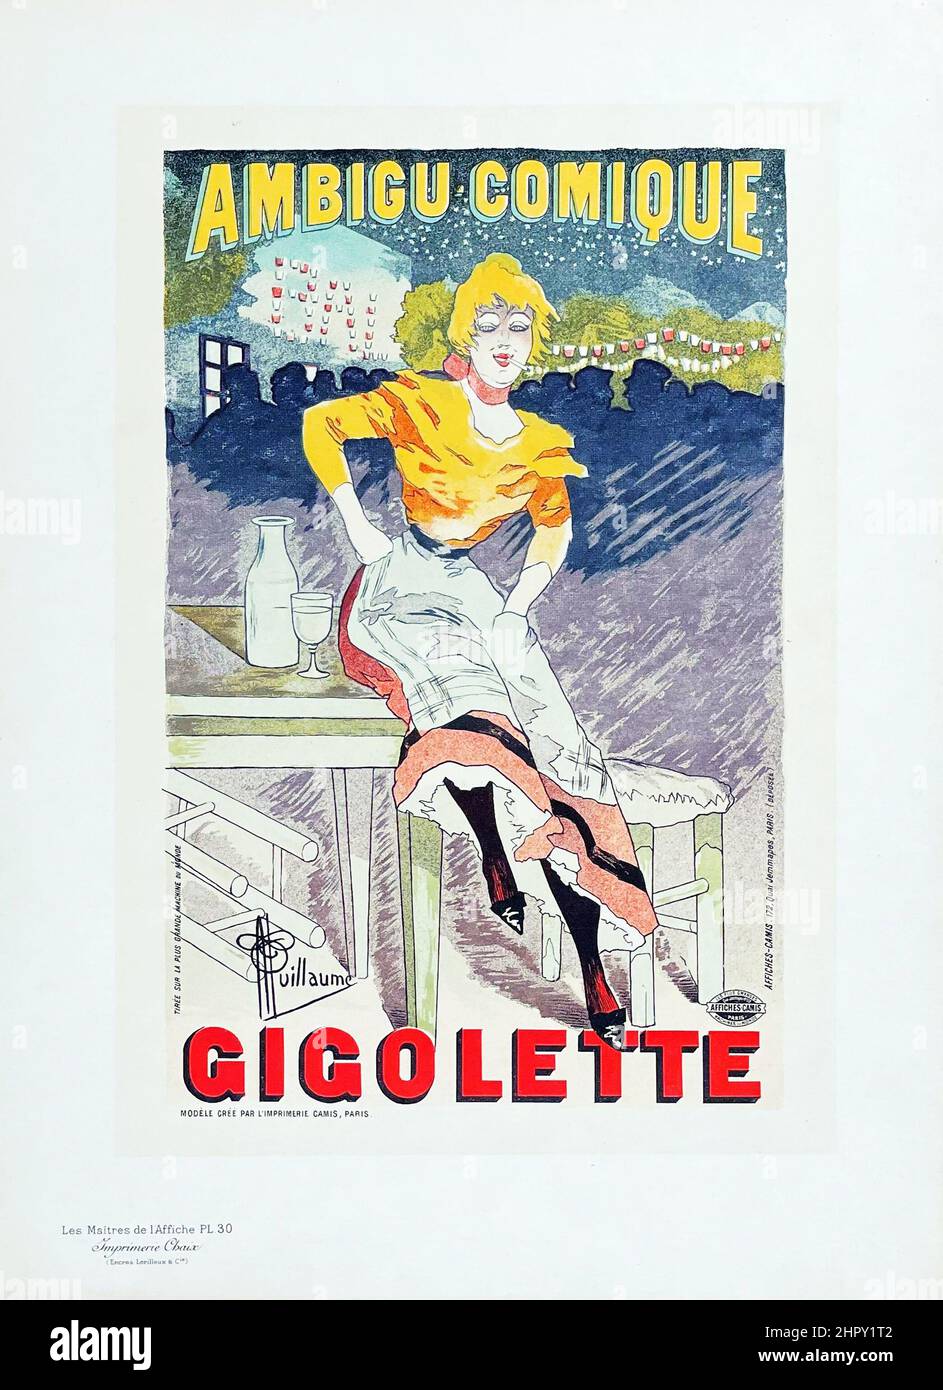 Les Maitres de l'Affiche - Gigolette - plate 30. Ambigu Comique. Artist: Albert Guillaume, c 1896. Theater poster. Stock Photo